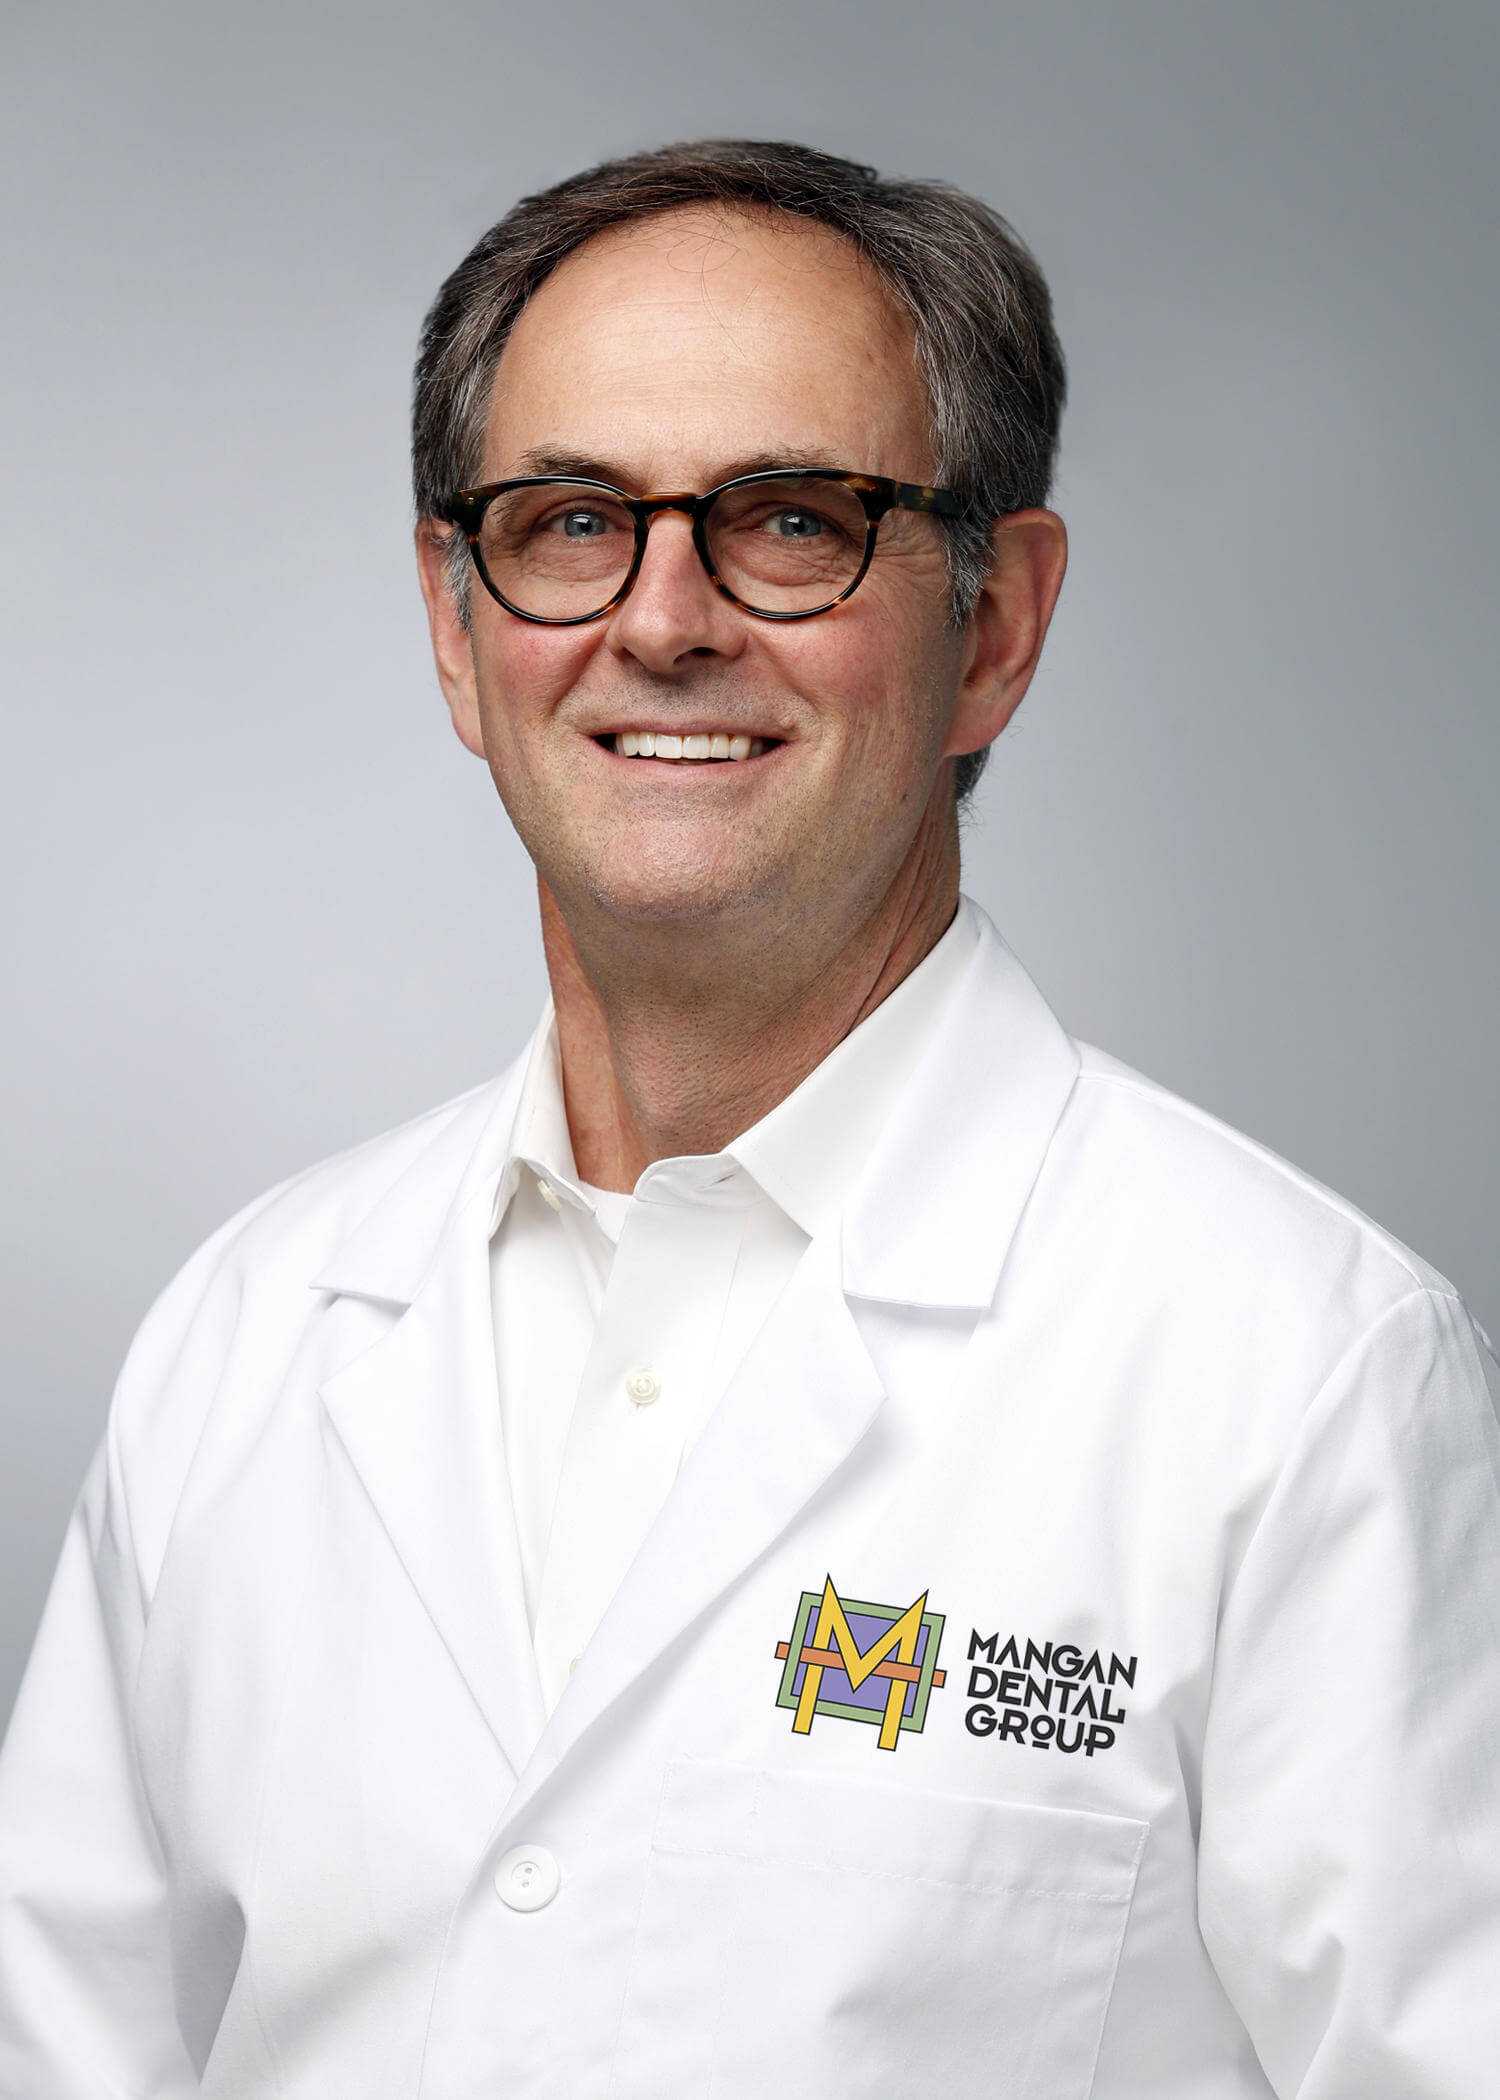 Dr. Steve Mangan